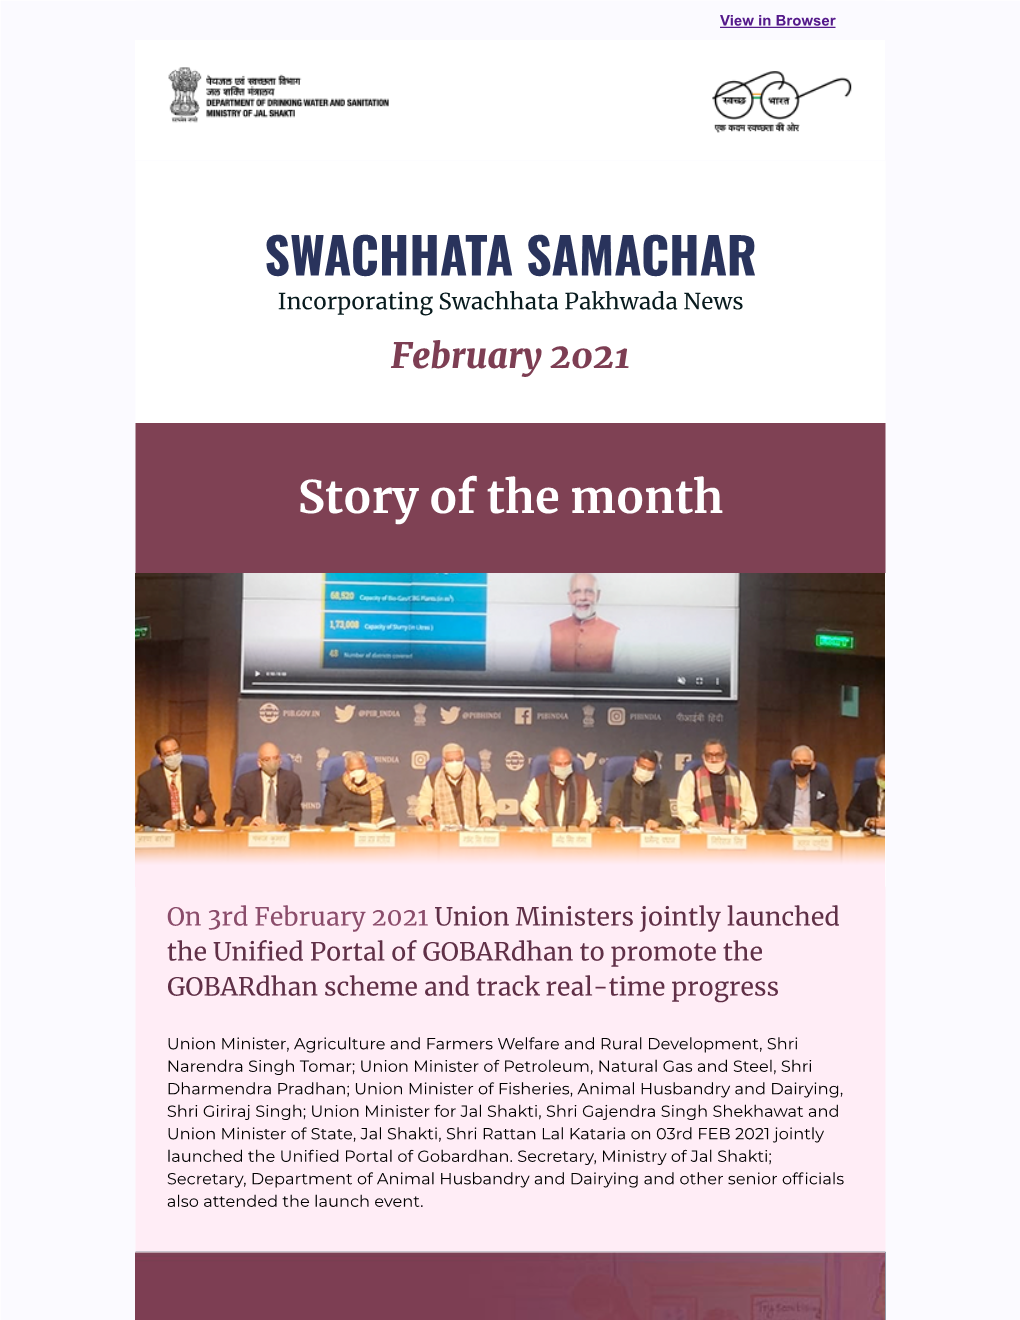 SWACHHATA SAMACHAR Incorporating Swachhata Pakhwada News February 2021